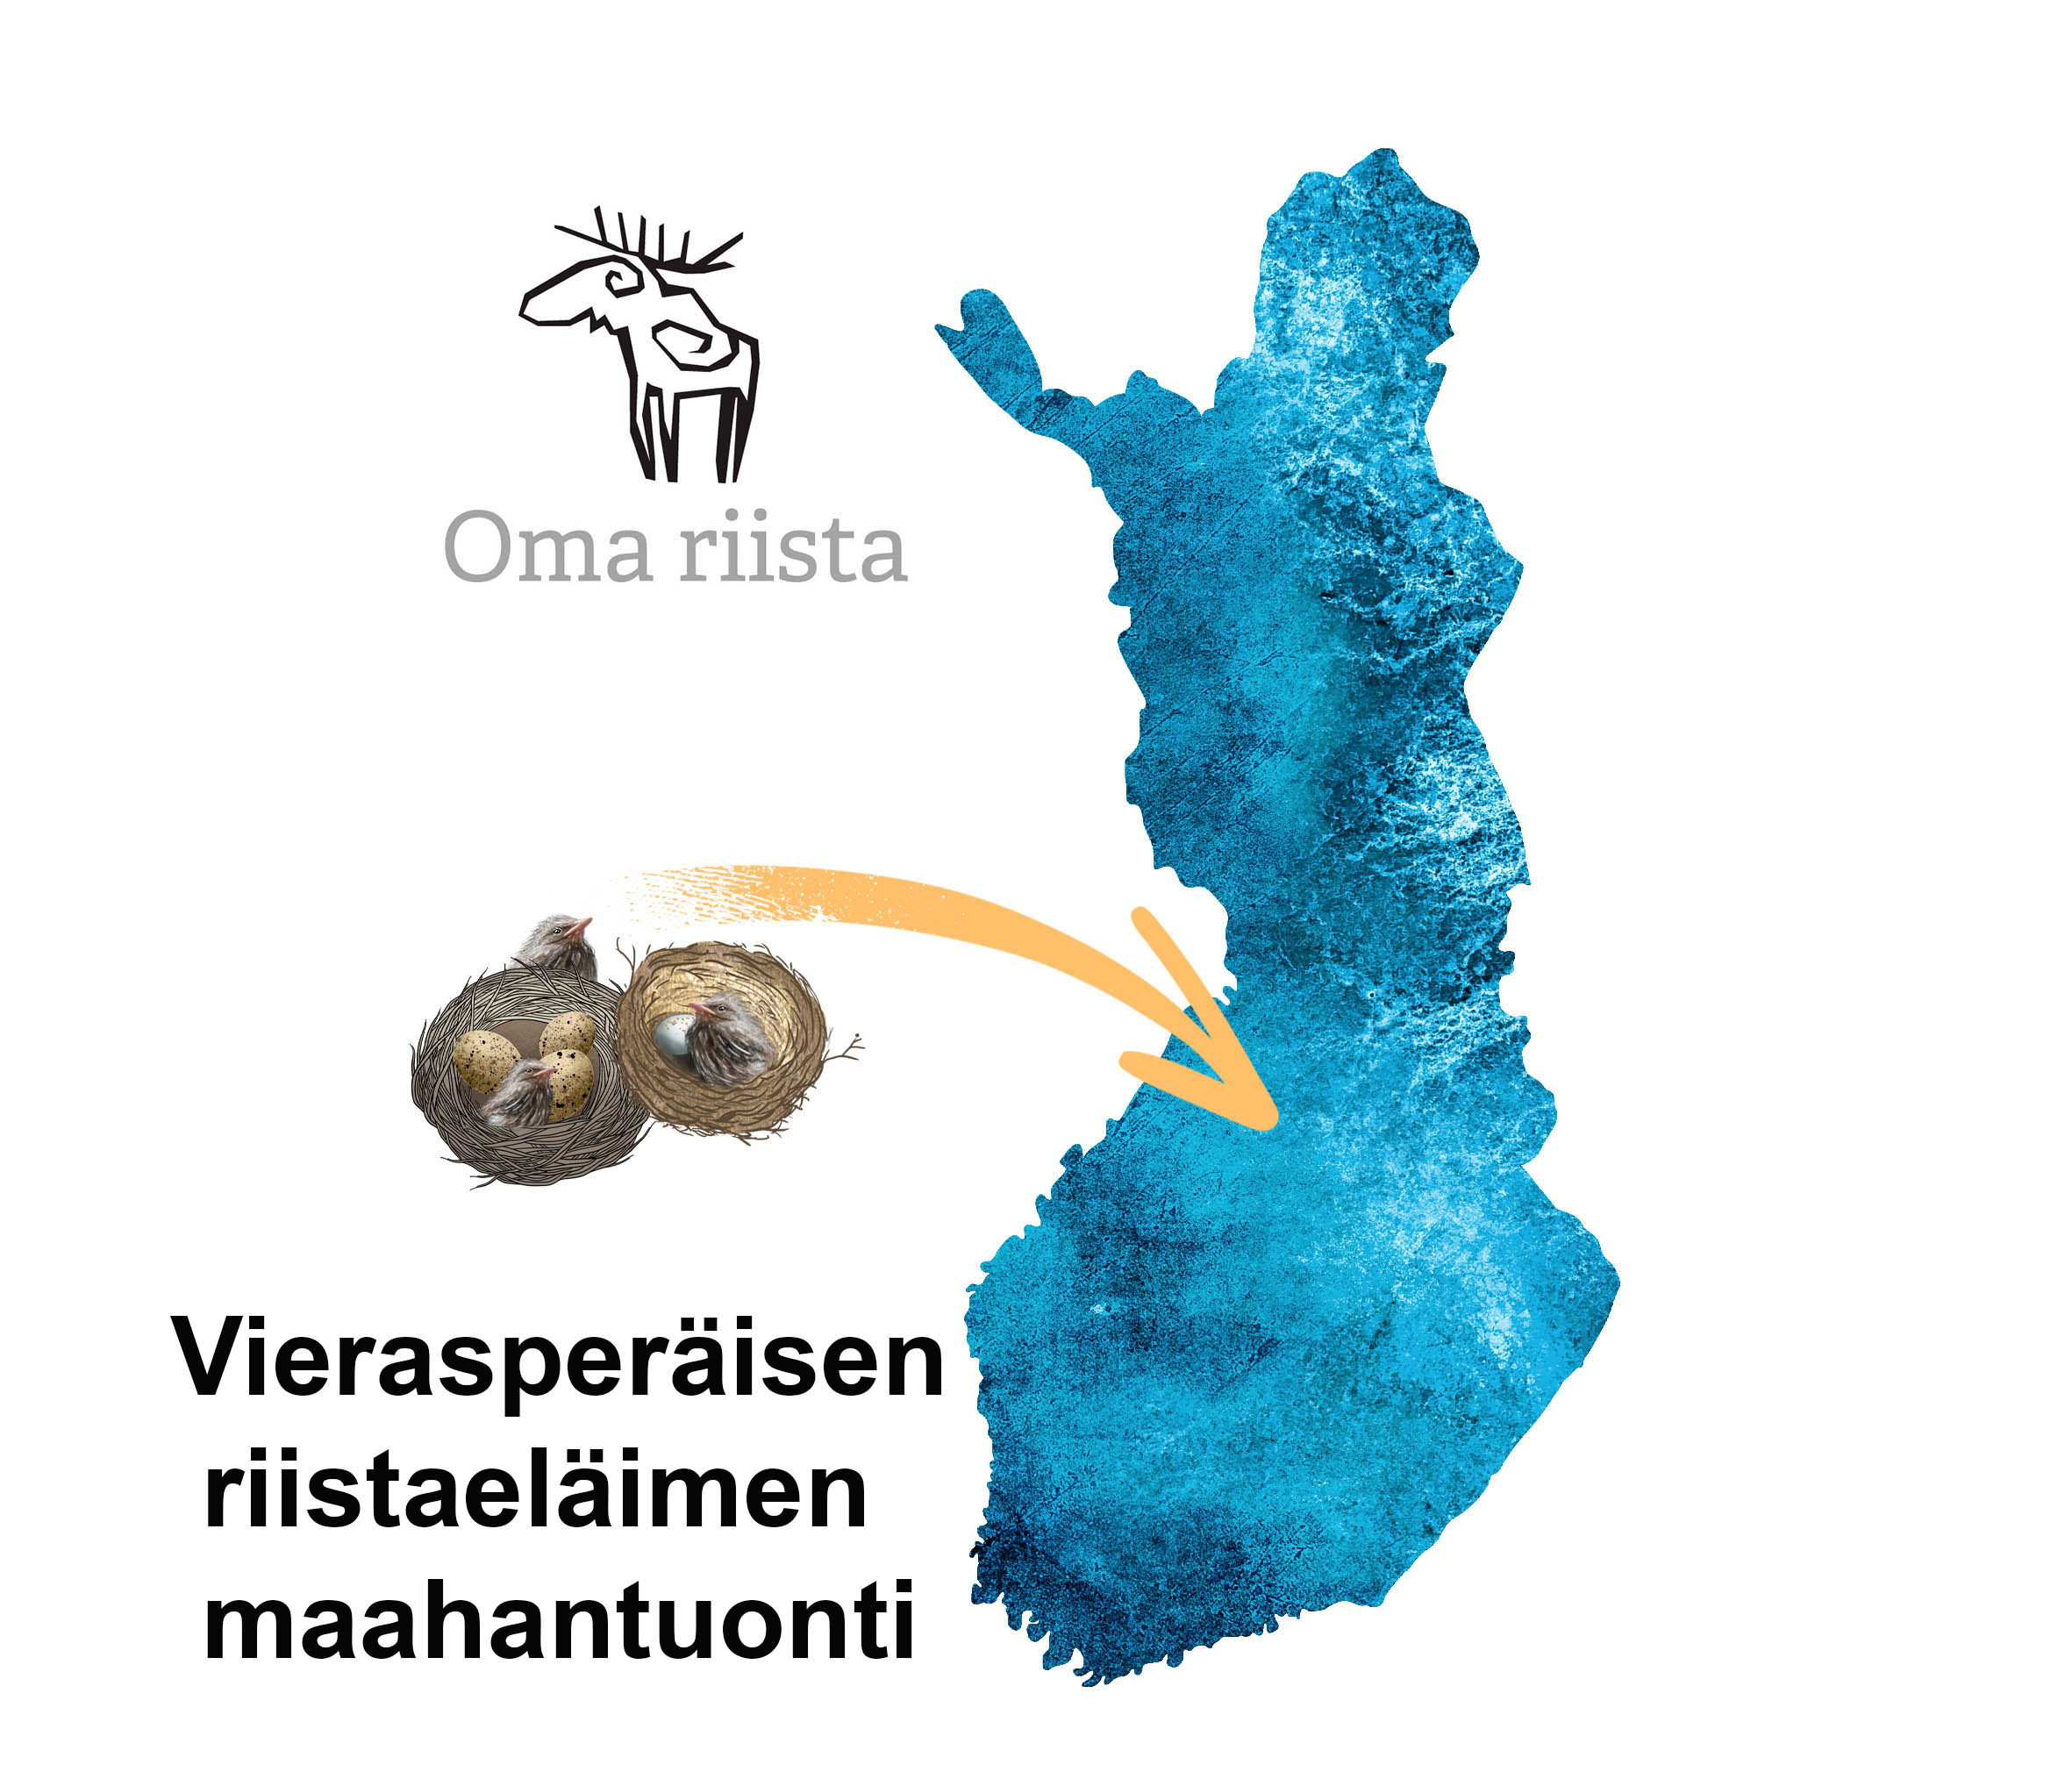 Piirros linnunpesistä, joista lähtee nuoli kohti Suomen karttaa. Vieressä Oma riista -logo ja teksti "Vierasperäisen riistaeläimen maahantuonti".